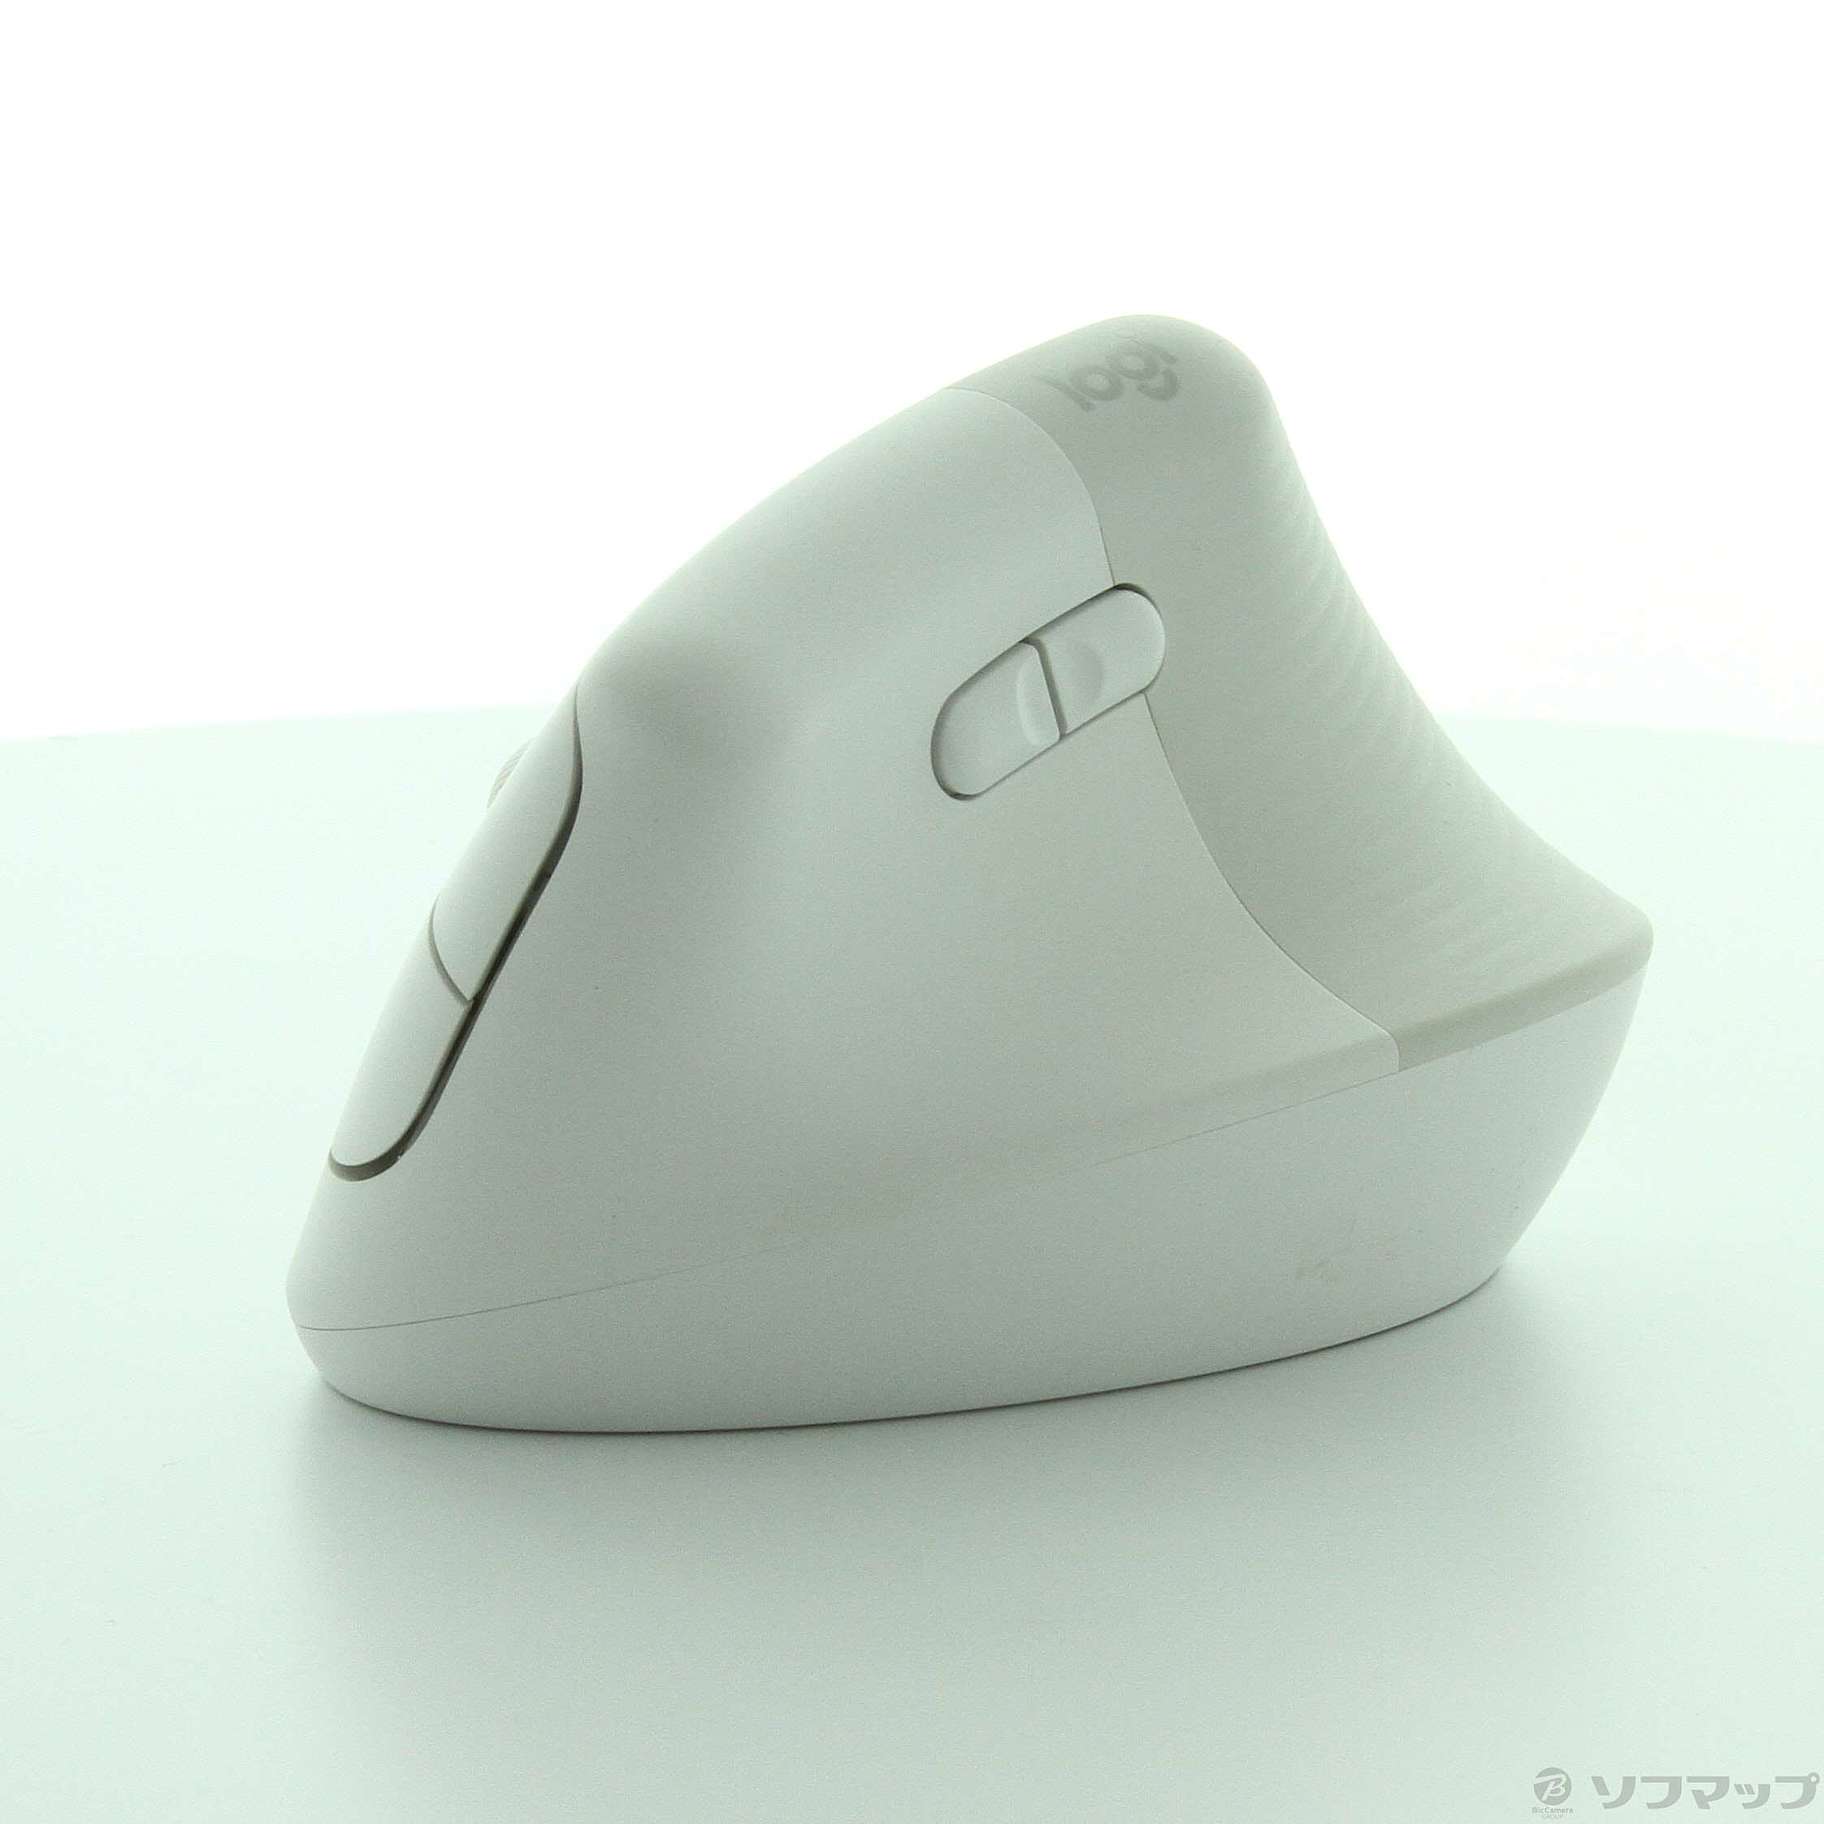 中古】〔展示品〕 Vertical Ergonomic Mouse LIFT M800PG ペイルグレー ...